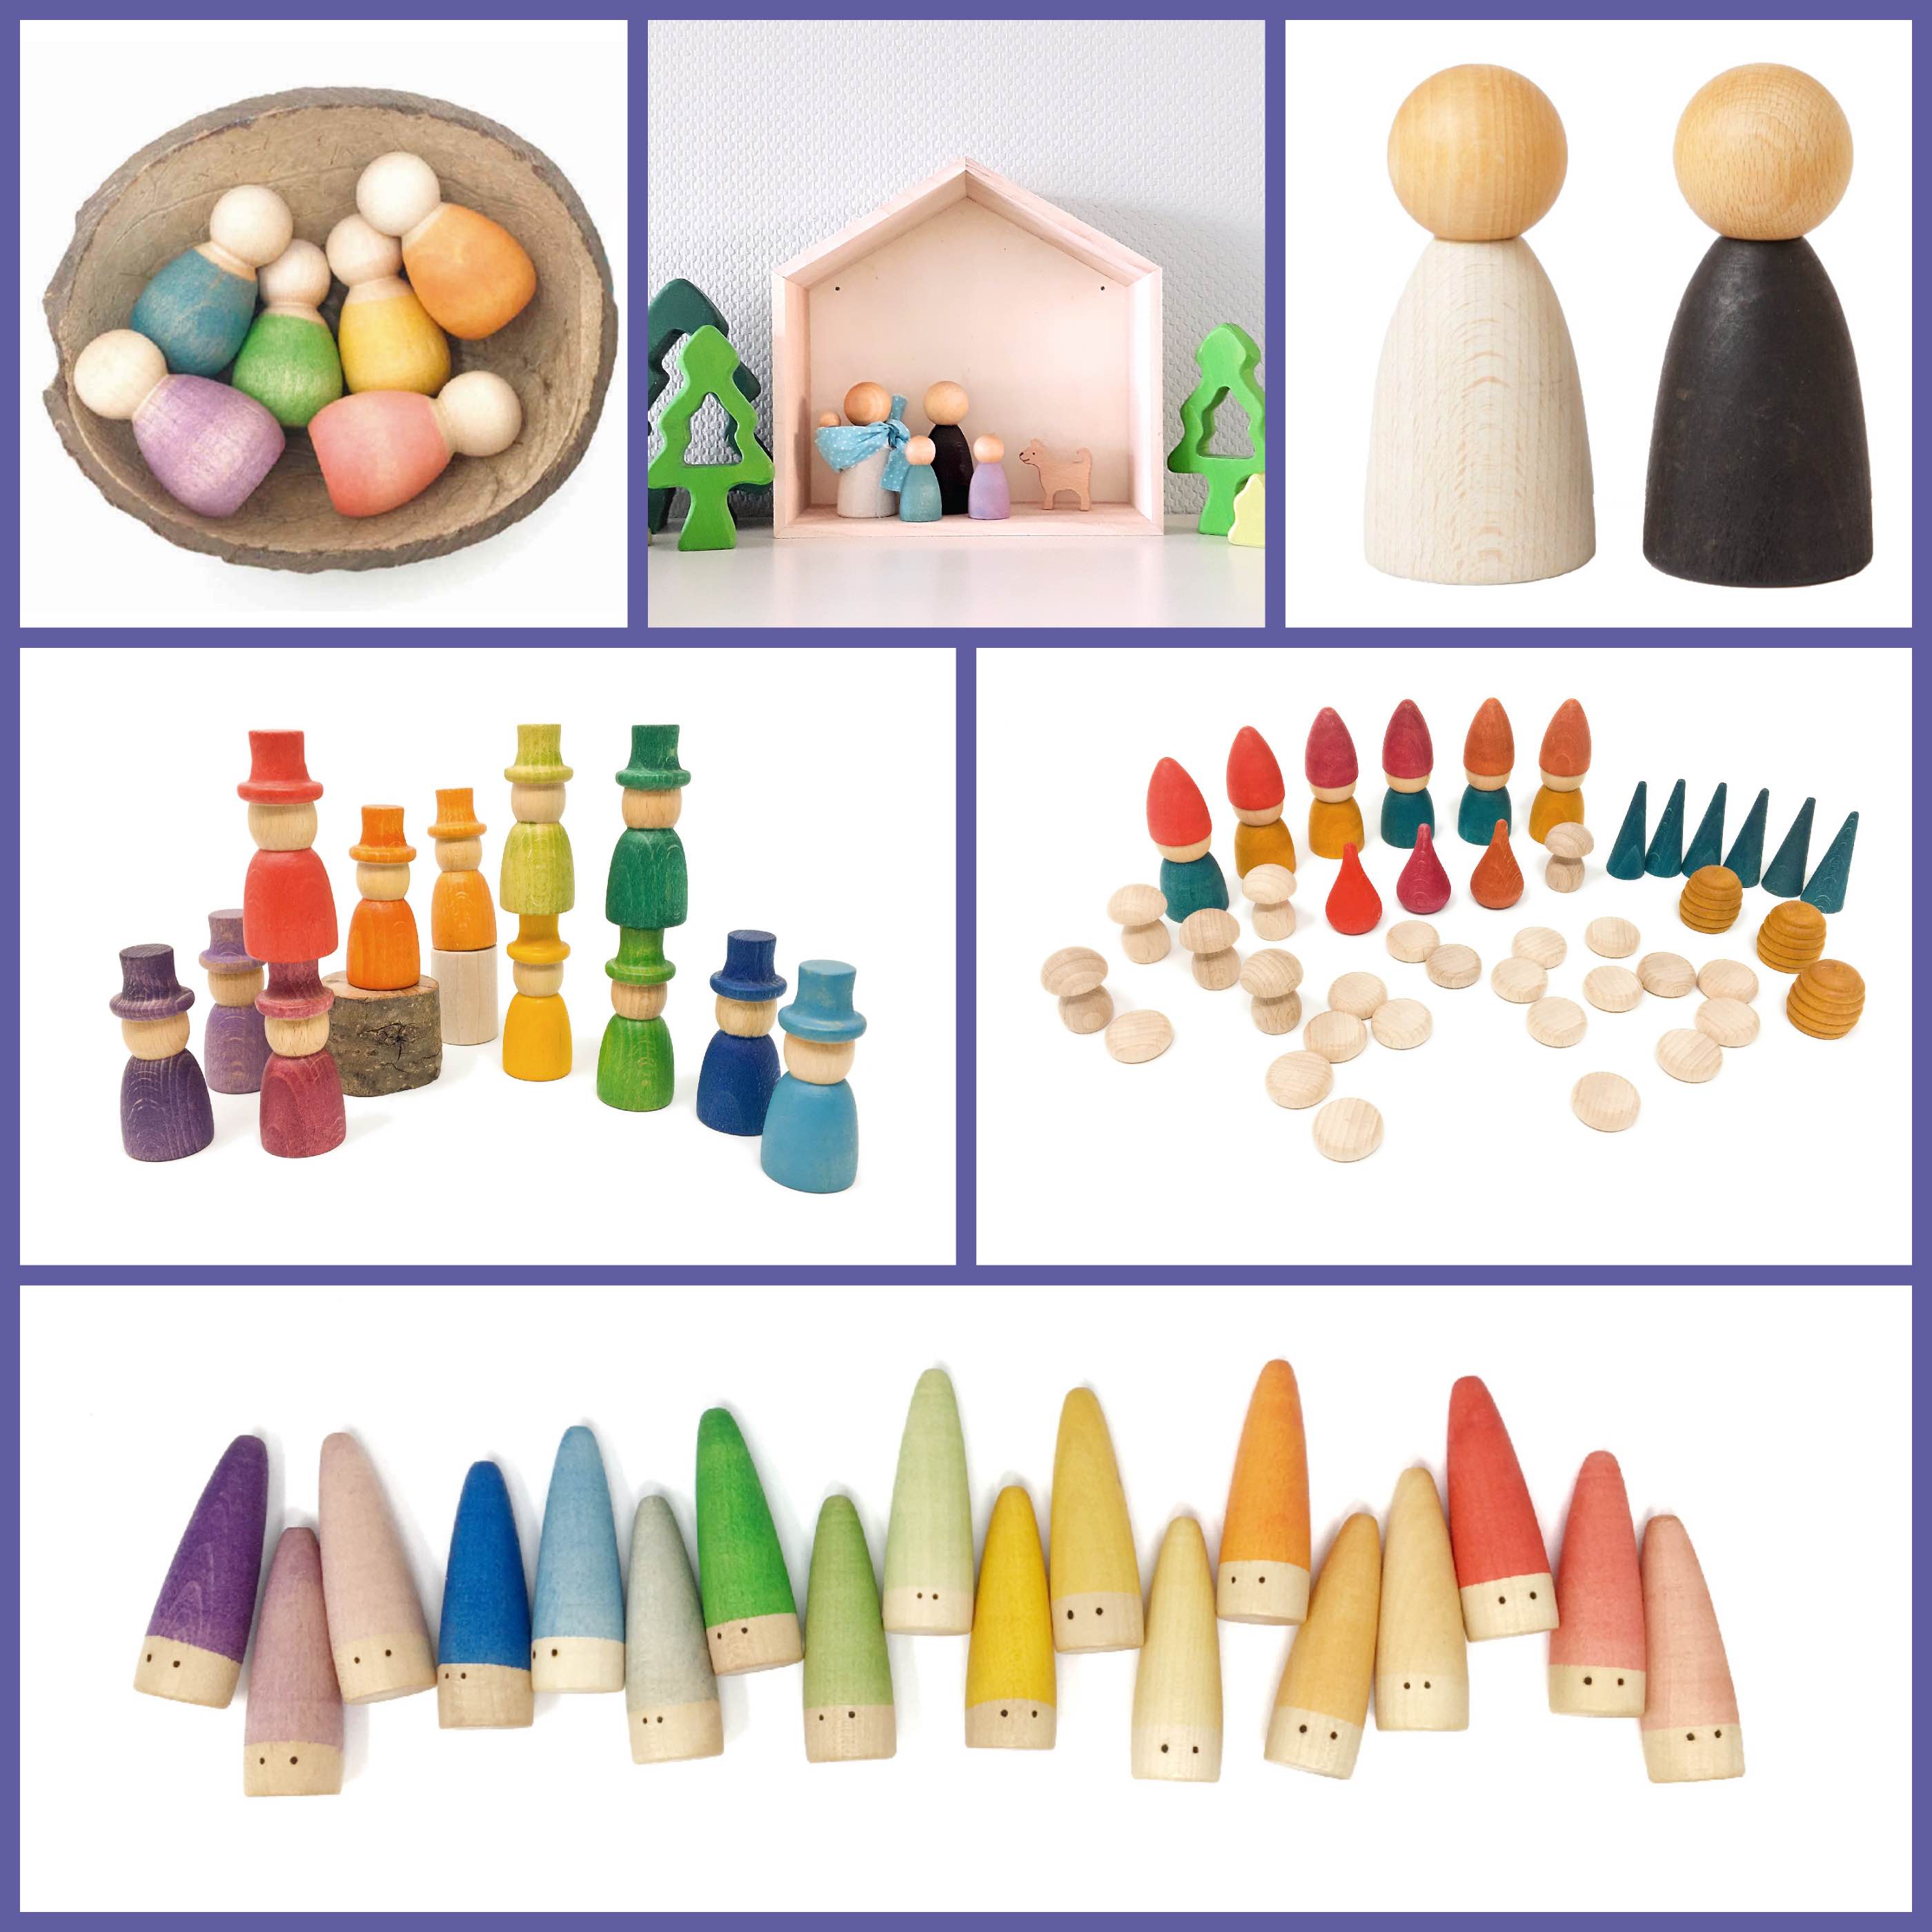 Verdragen Besmettelijke ziekte bouw De nieuwe producten van Grapat - Houtspel - Duurzaam houten speelgoed